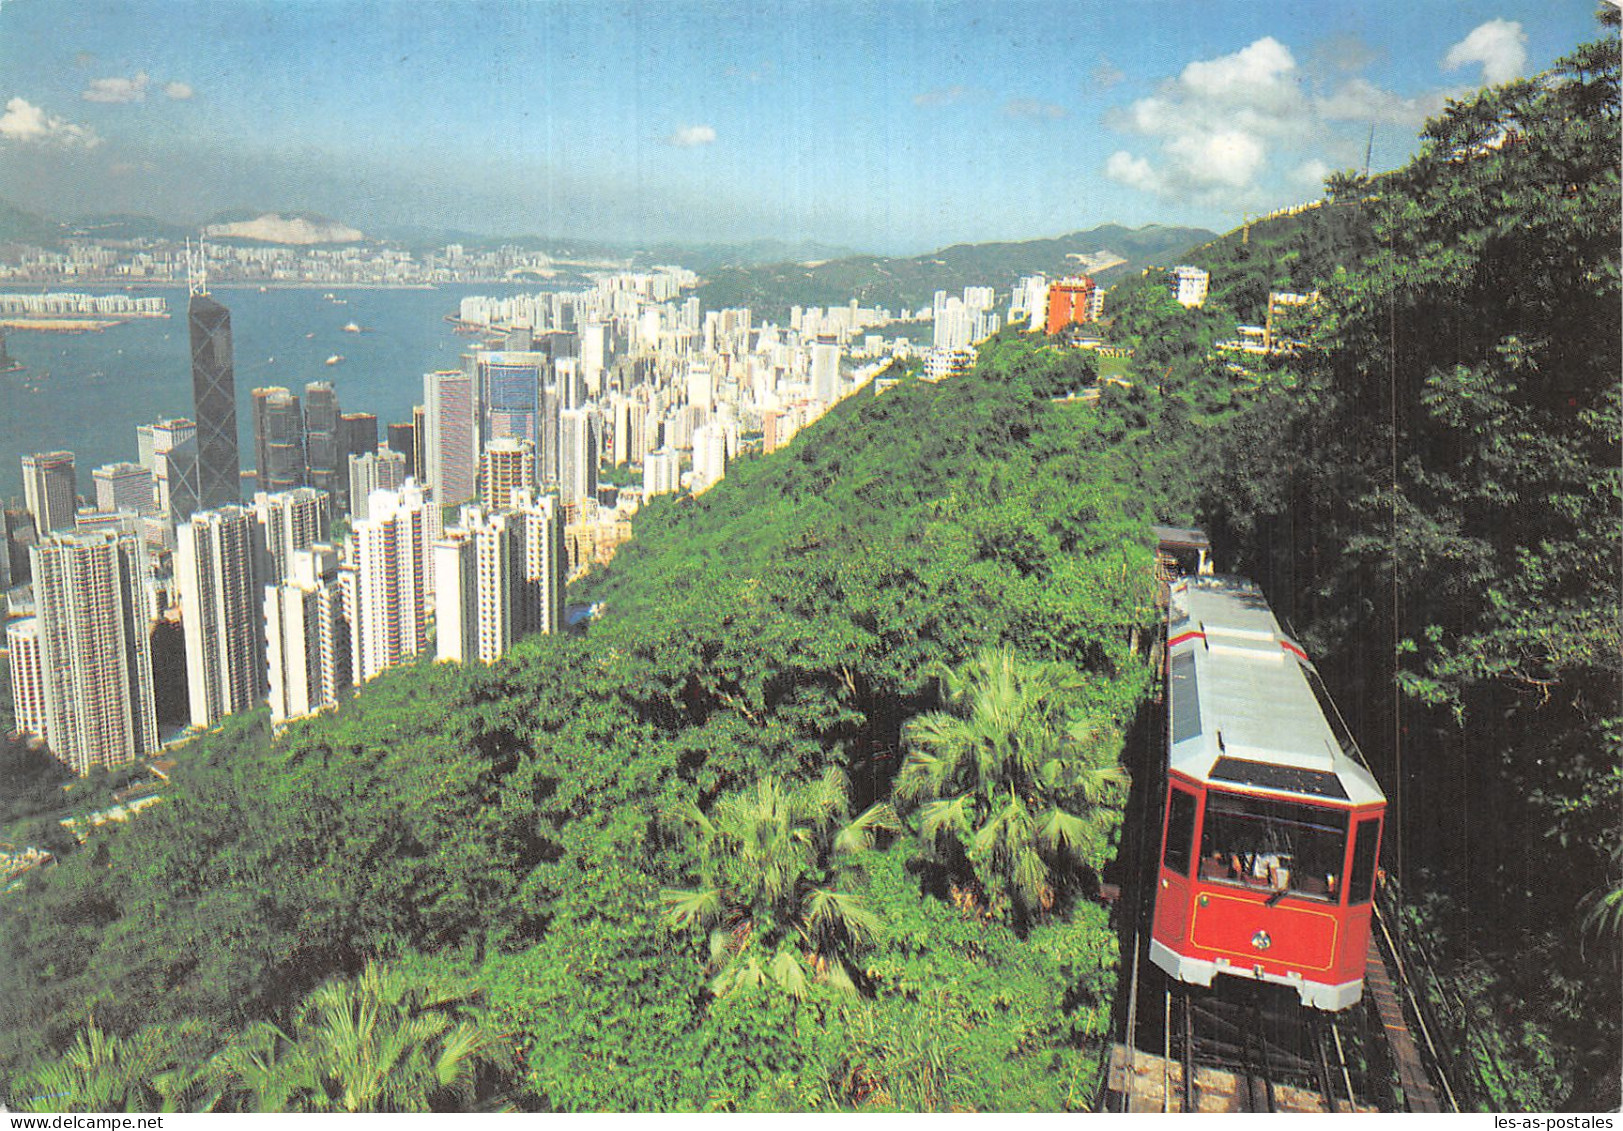 HONG KONG TRAMWAY - China (Hong Kong)